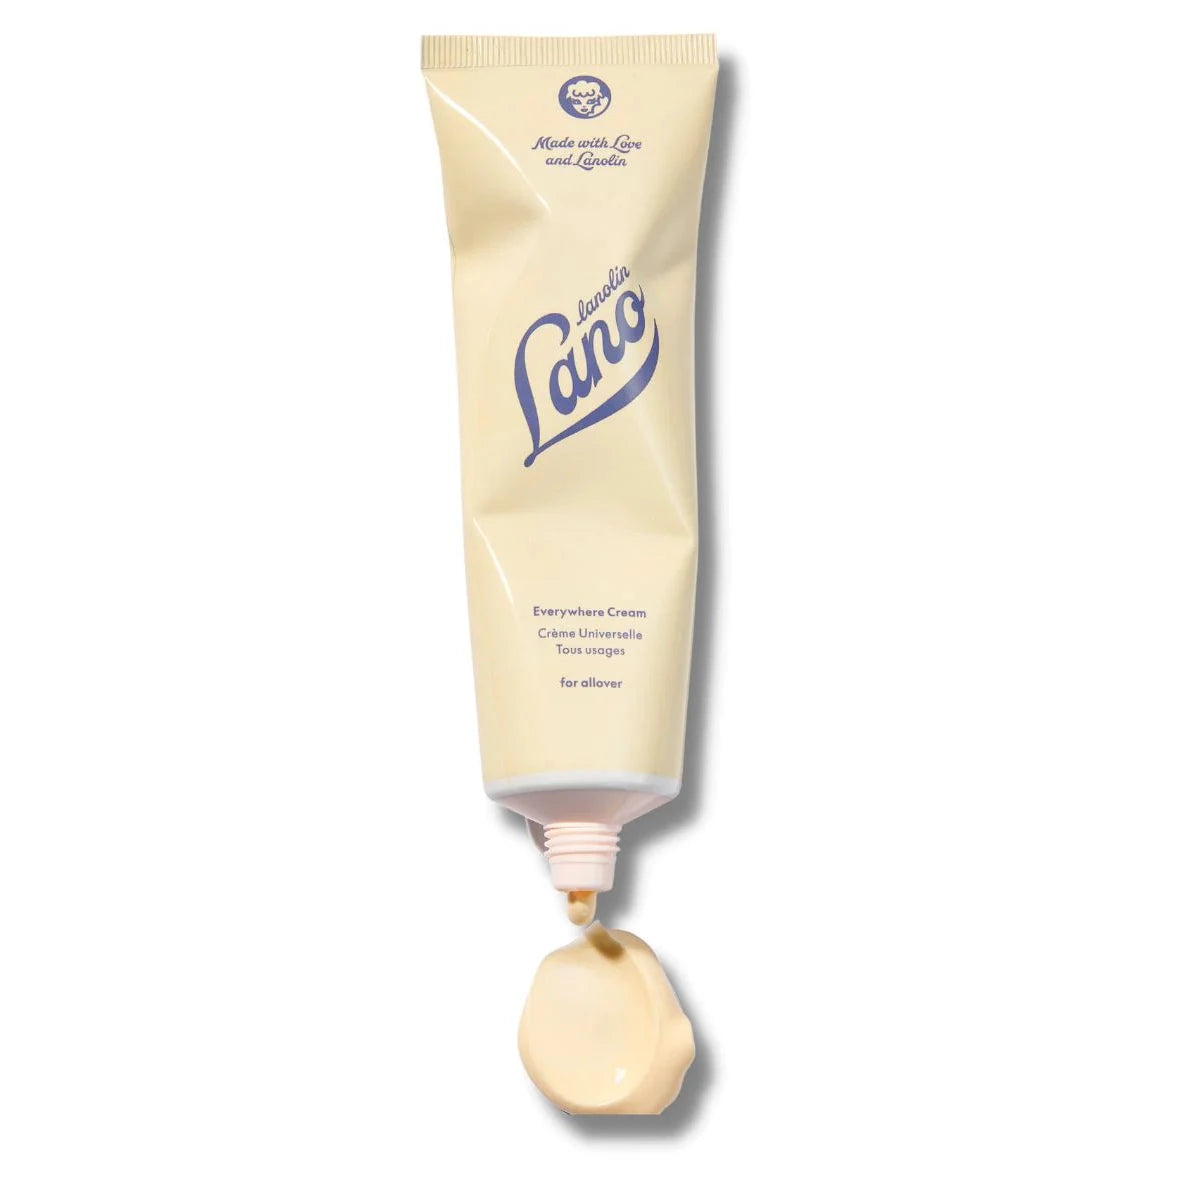 Lanolin Everywhere Cream Tube Lanolips - 85ml (viso, occhi, corpo, mani, bimbi)